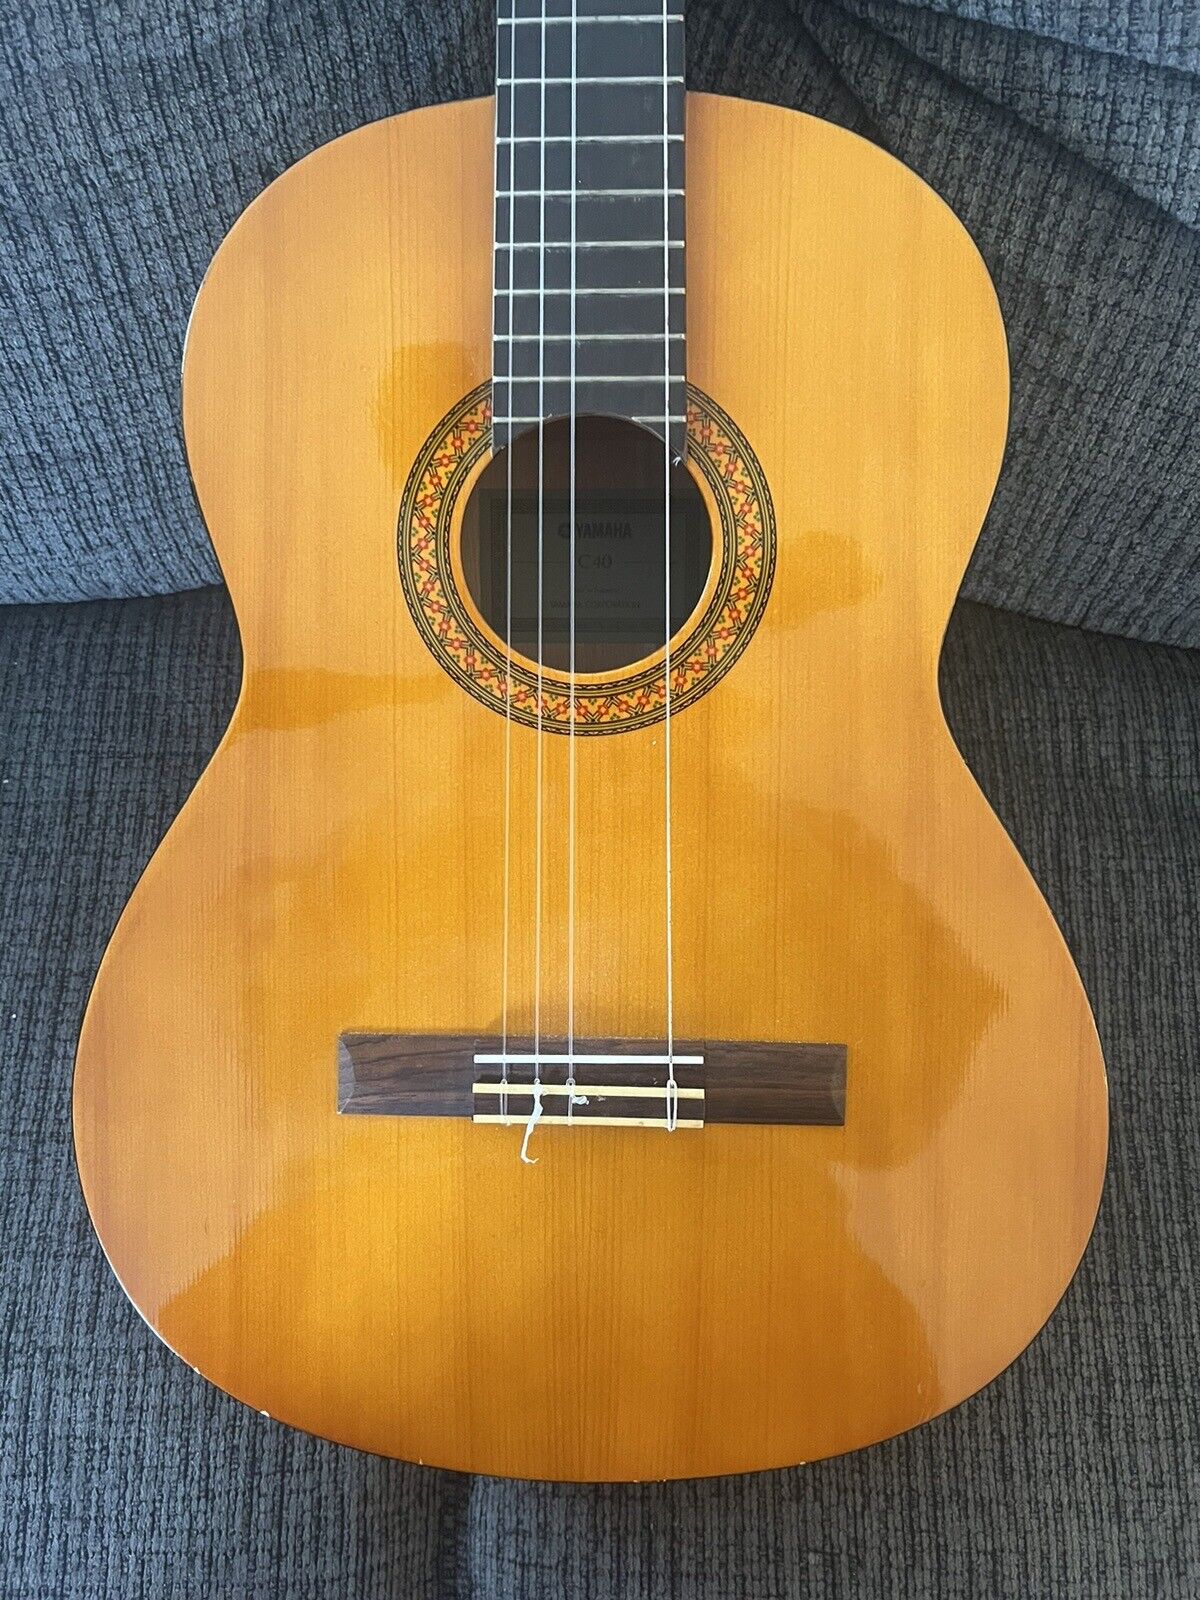 Yamaha c-40 acoustic guitar (Lefty) 1